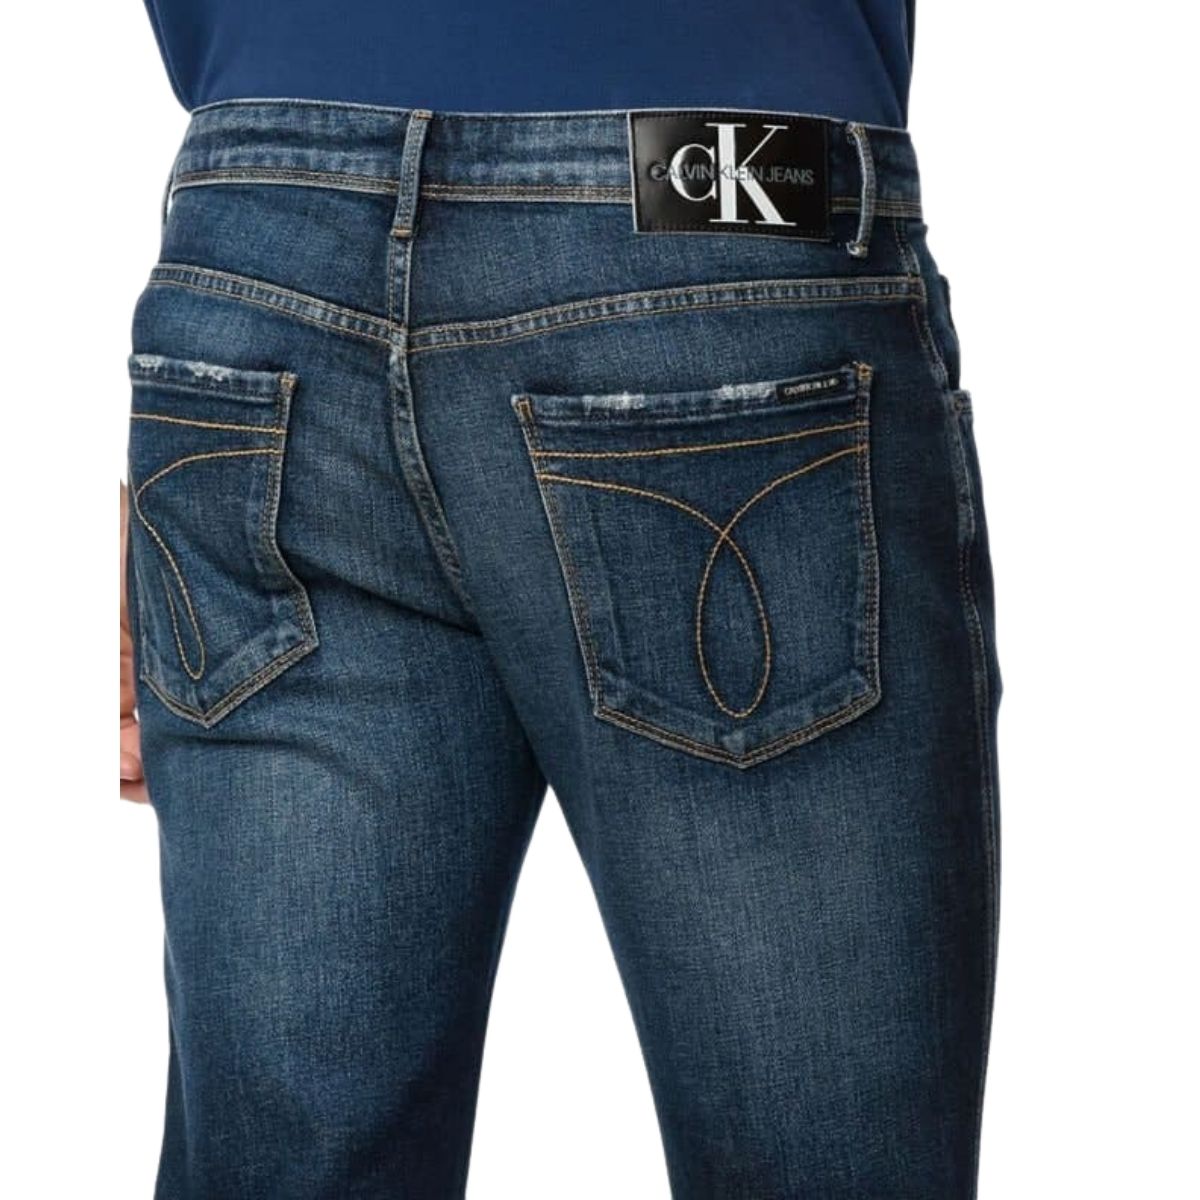 Calça Calvin Klein Five Pockets Skinny